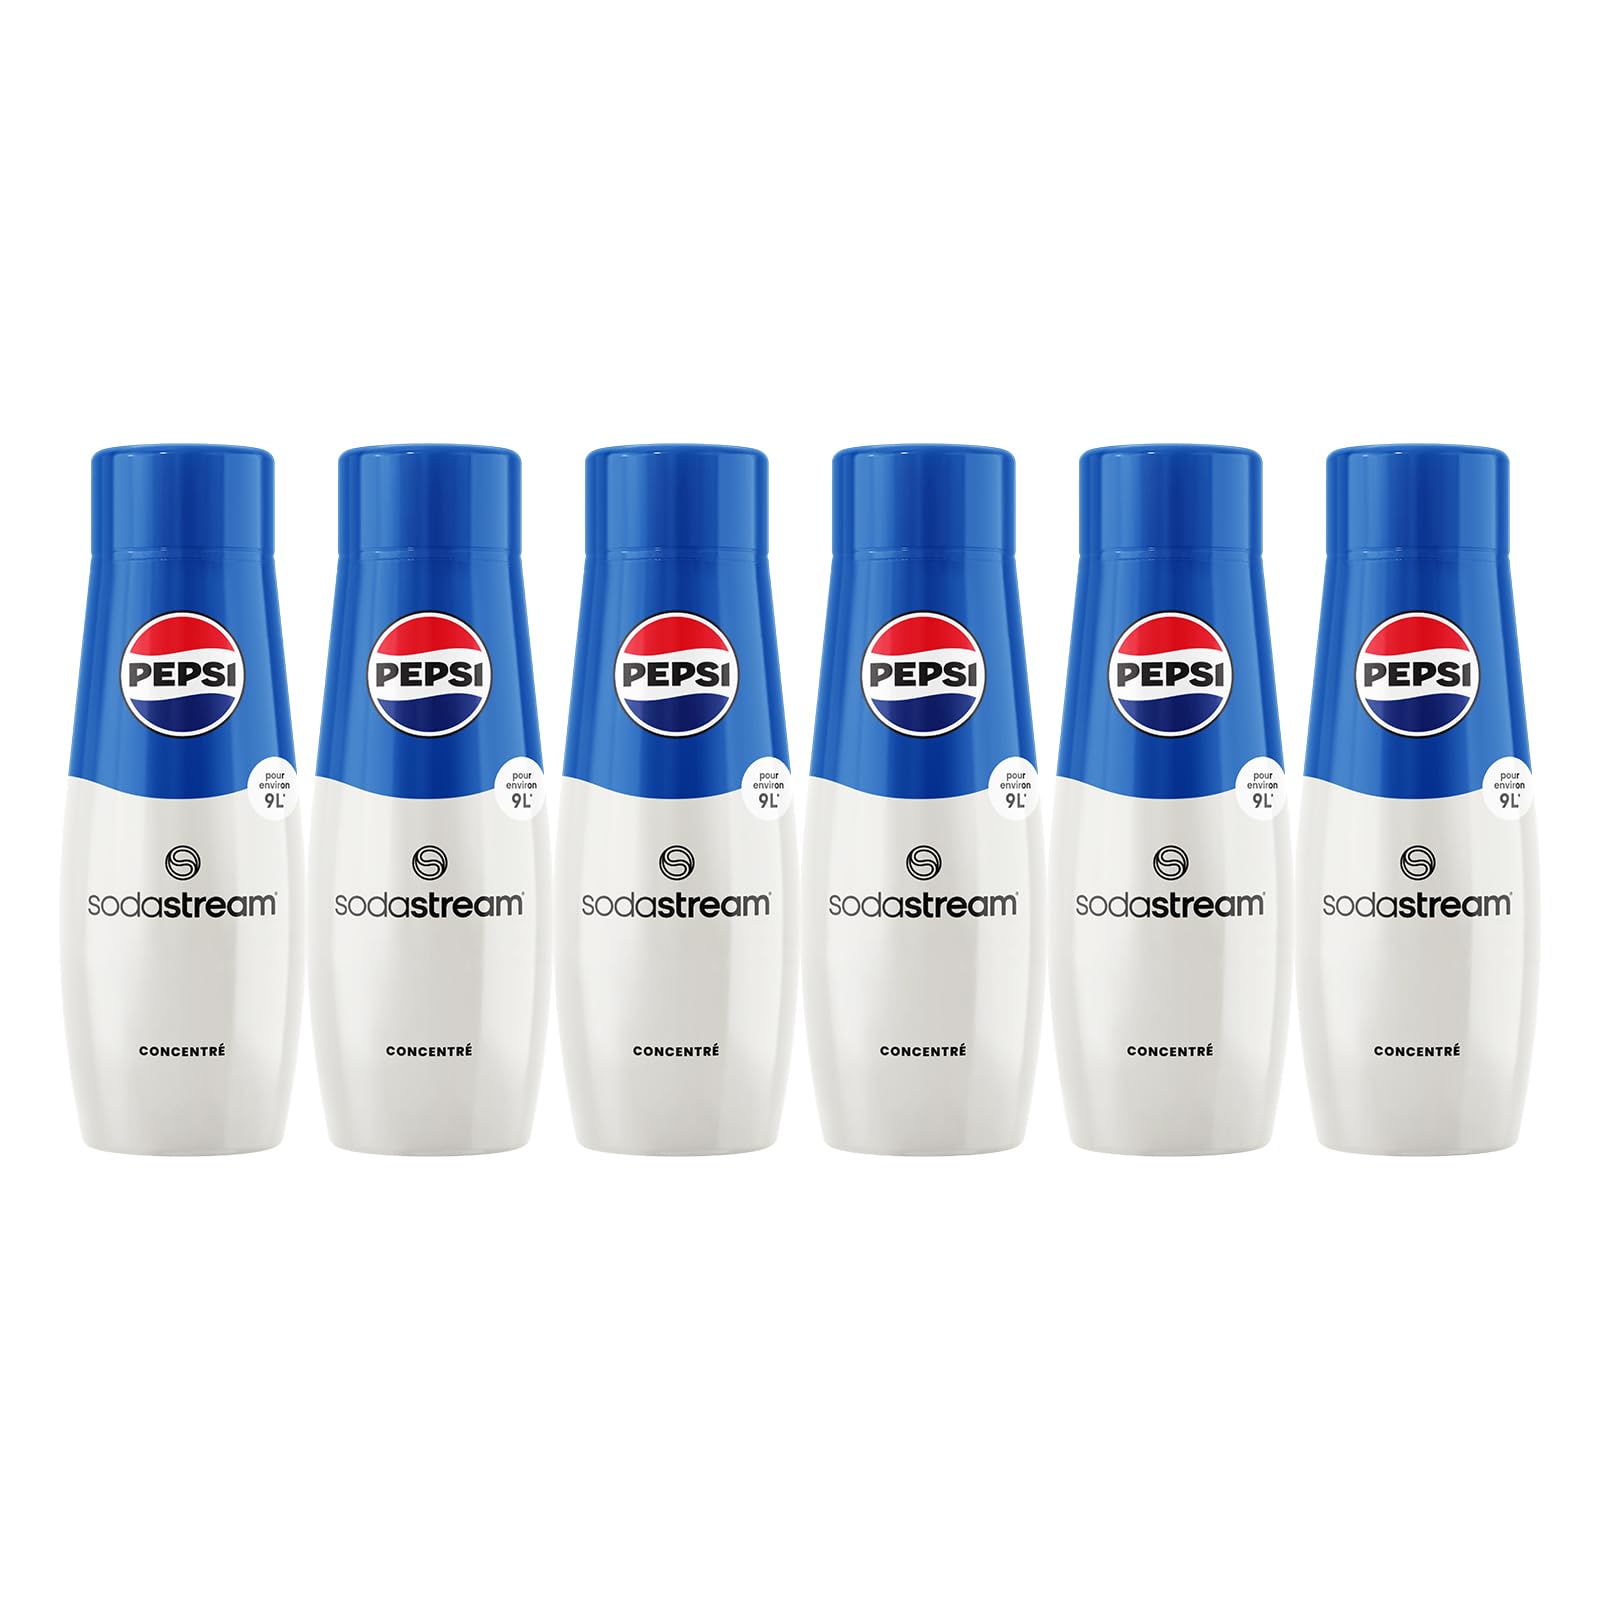 SodaStream Sirup Pepsi Cola - 1x Flasche ergibt 9 Liter Fertiggetränk, Sekundenschnell zubereitet und immer frisch, 6er Pack (6 x 440 ml)